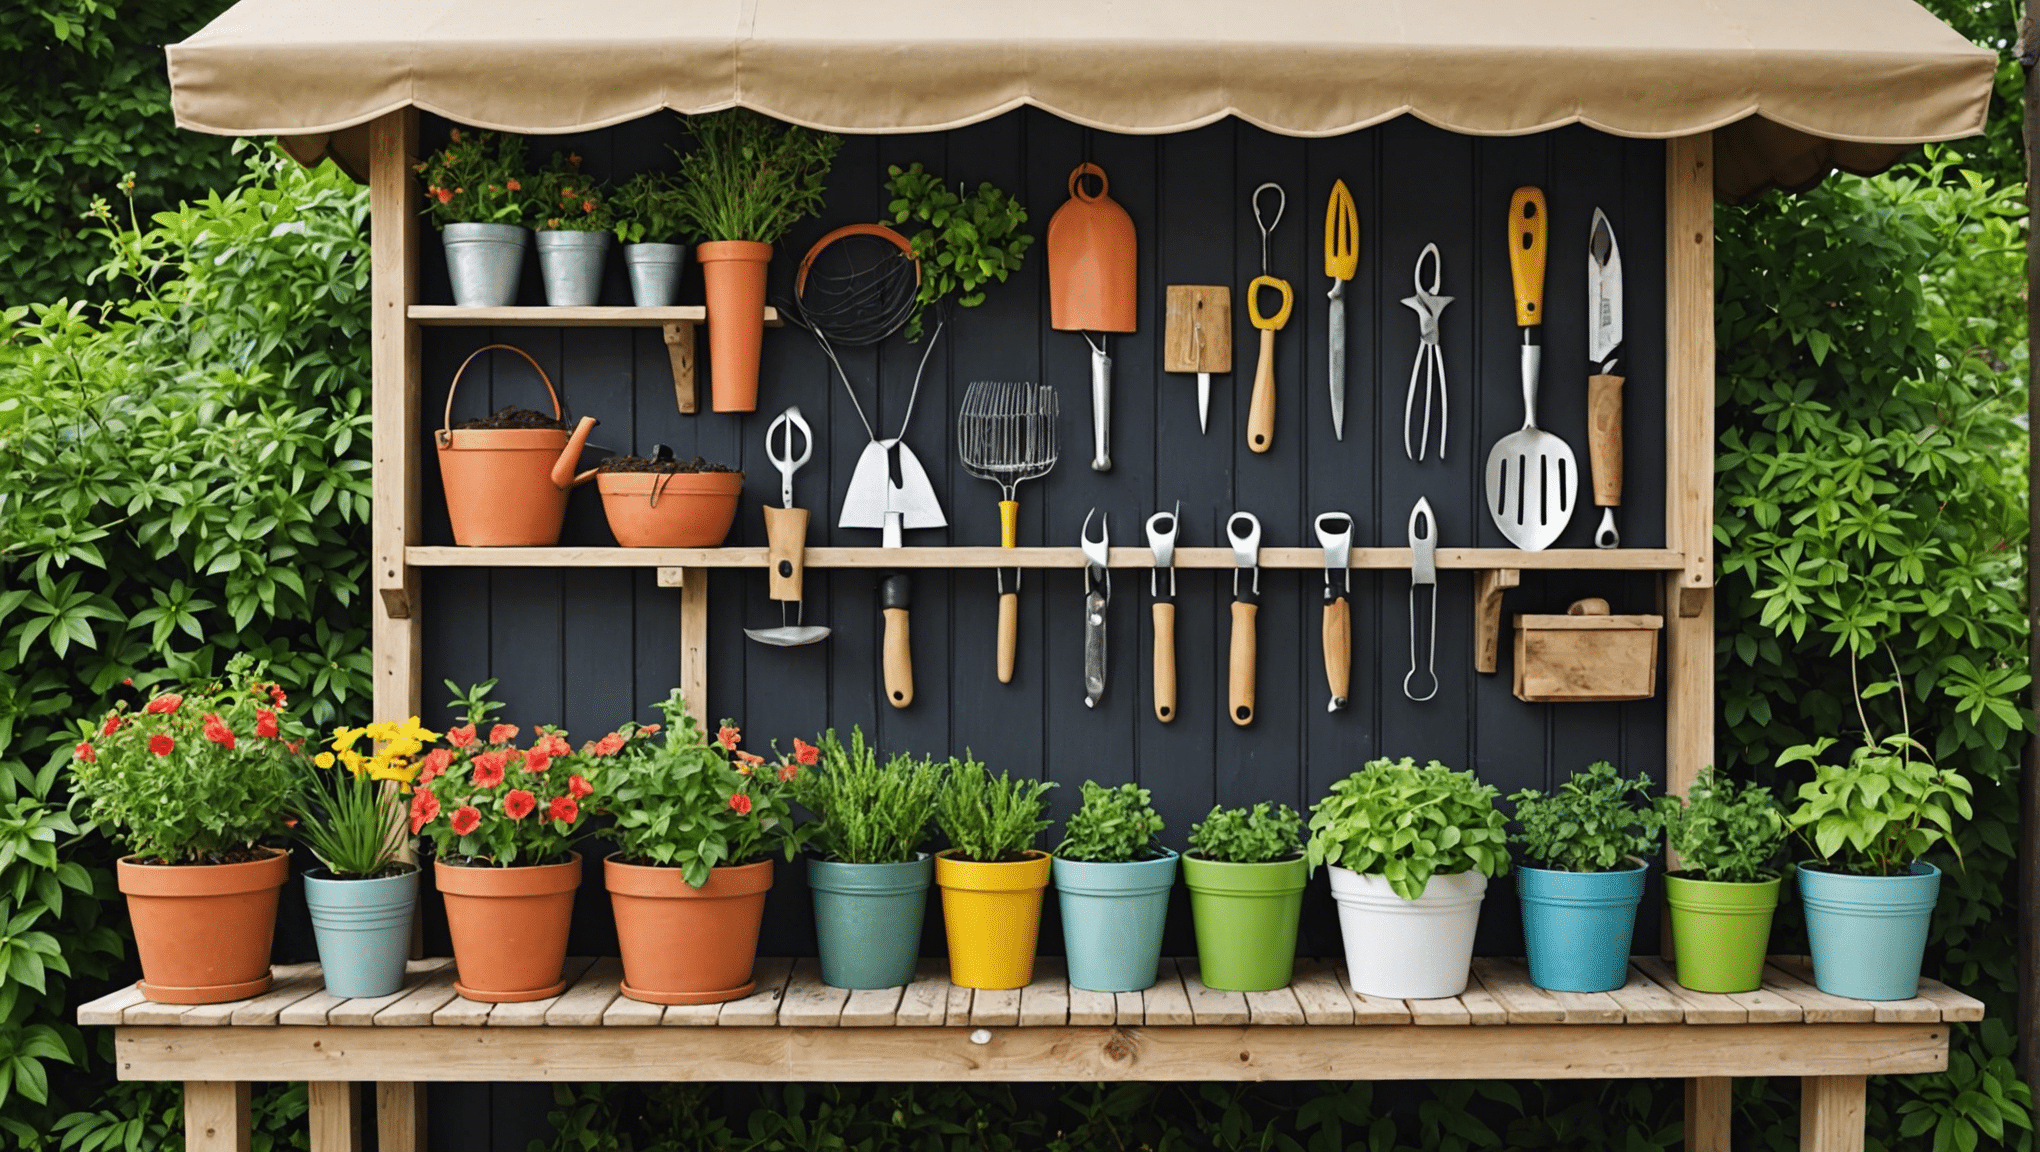 objavte kreatívne nápady na skladovanie záhradného náradia, aby ste mali svoje záhradné vybavenie organizované a dostupné s našimi užitočnými tipmi a riešeniami.